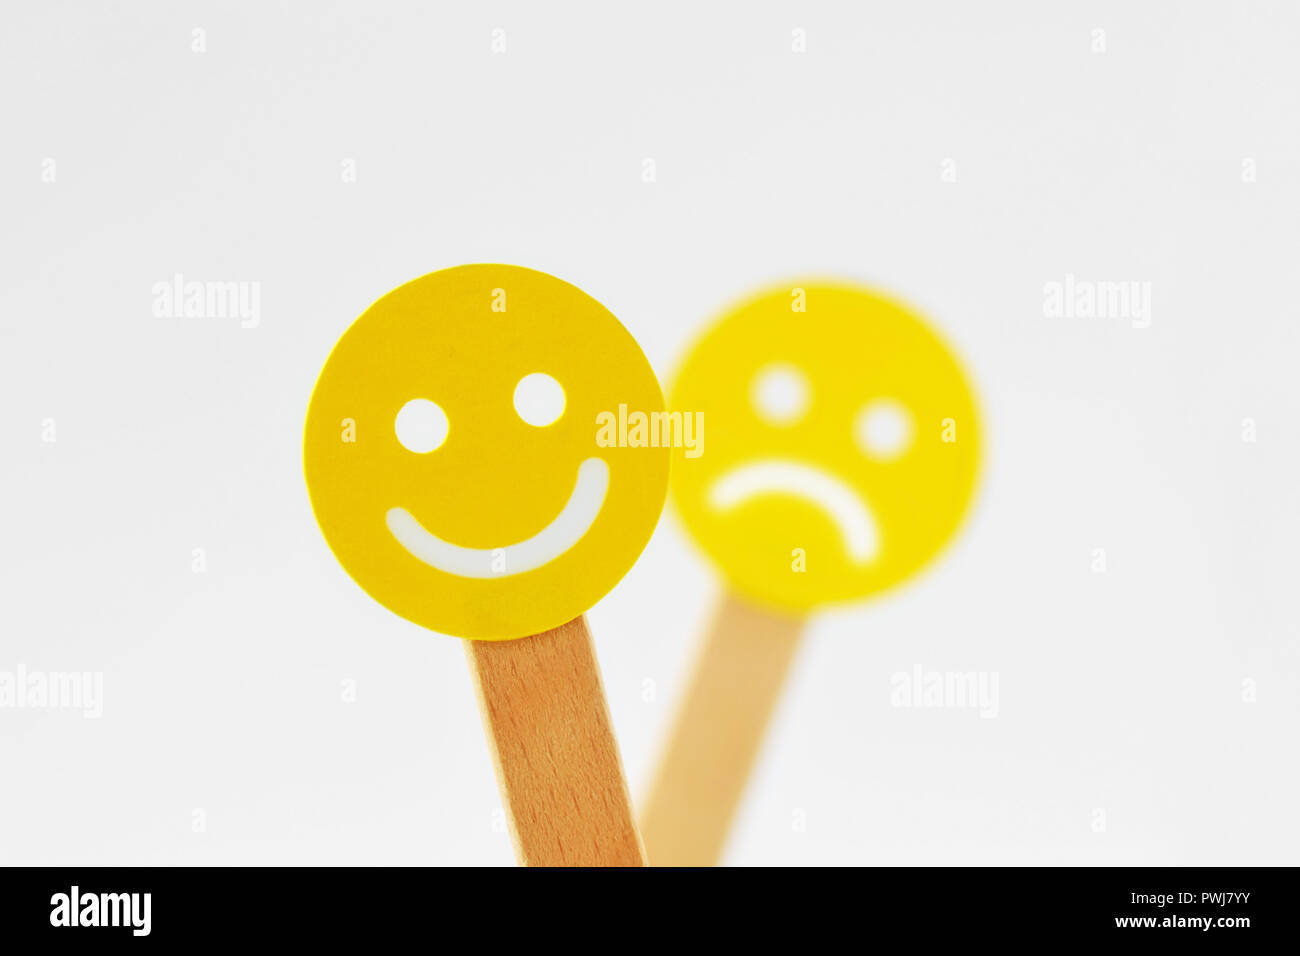 Smiley face à l'expression positive en face de l'foucs visage triste - Notion de positivité Banque D'Images